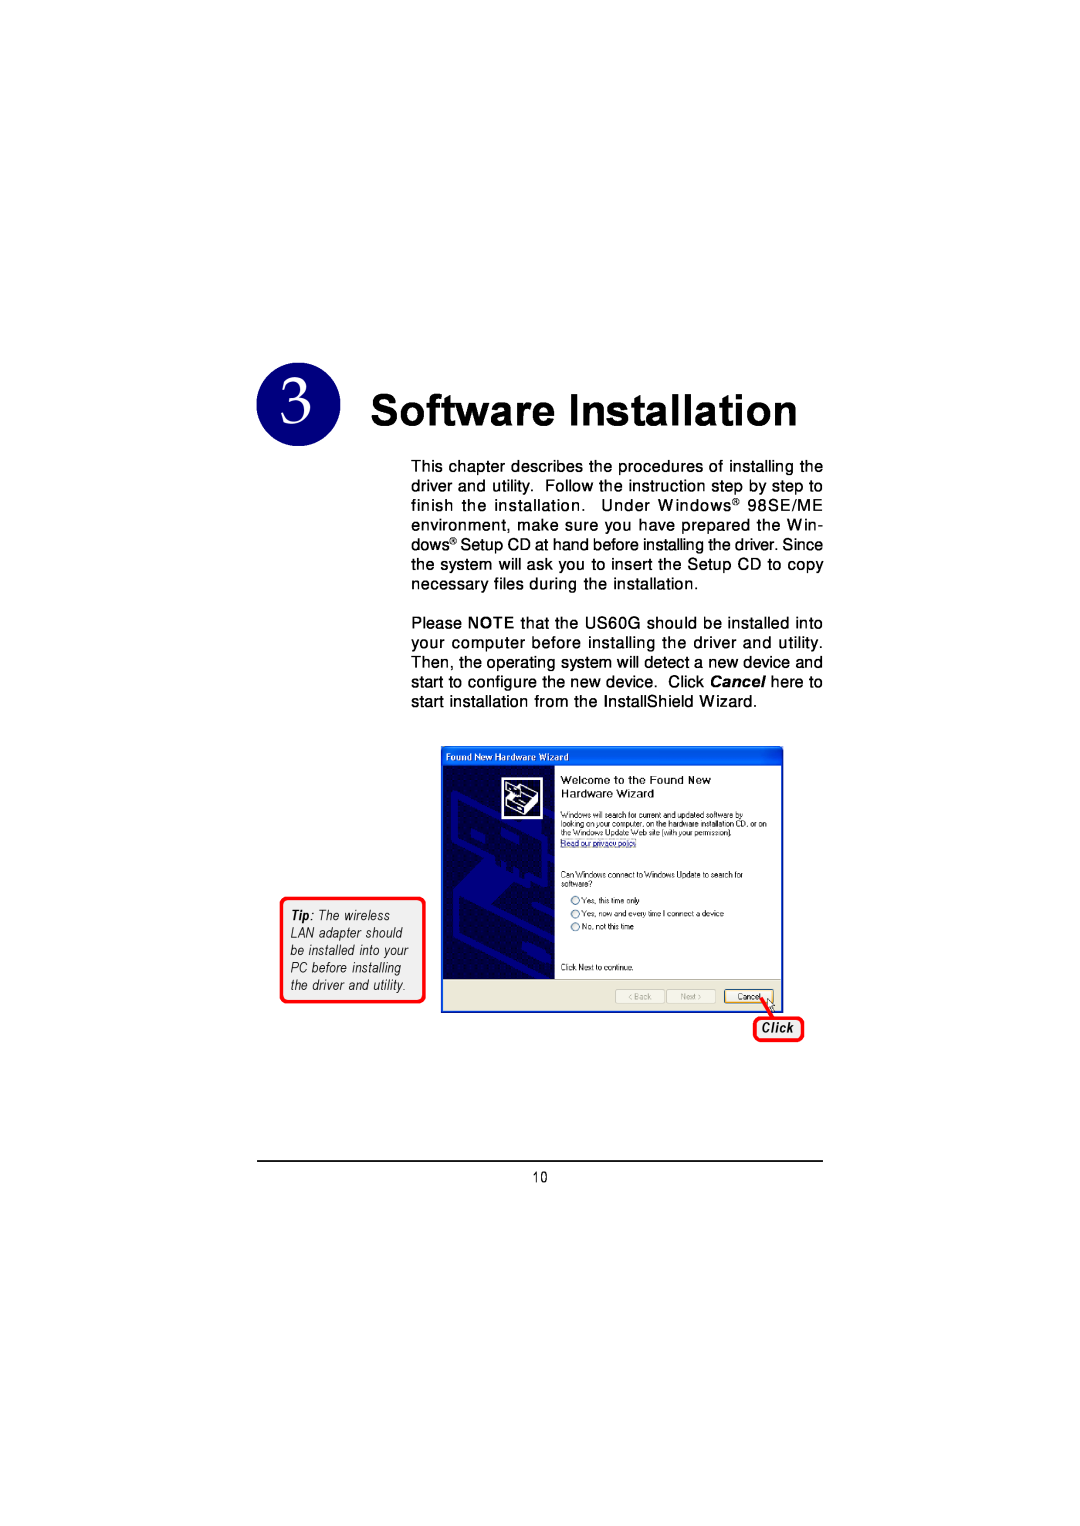 MSI US60G manual Software Installation, Click 